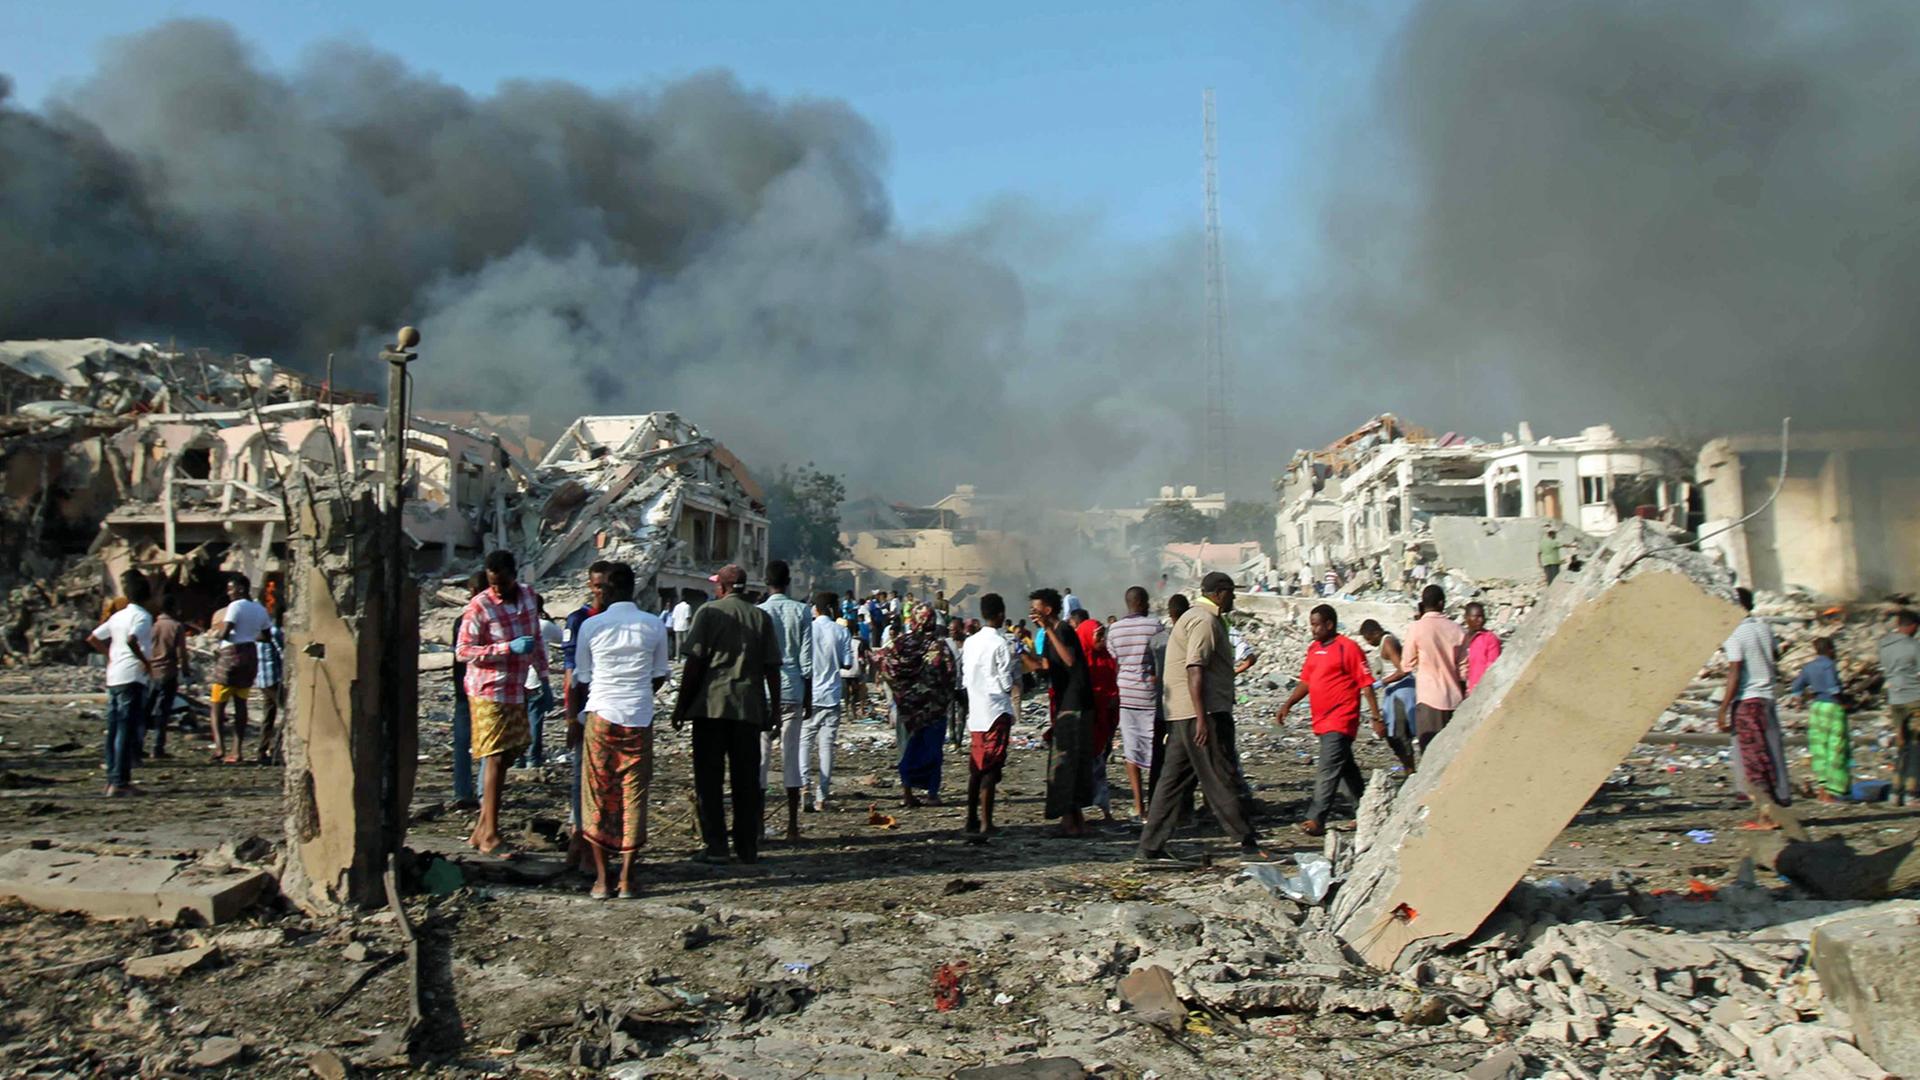 Bislang schwerster Bomebenanschlag in Somalias Hauptstadt Mogadischu: Das Bild zeigt die Verwüstungen nach der Bombenexplosion vor dem Safari Hotel.